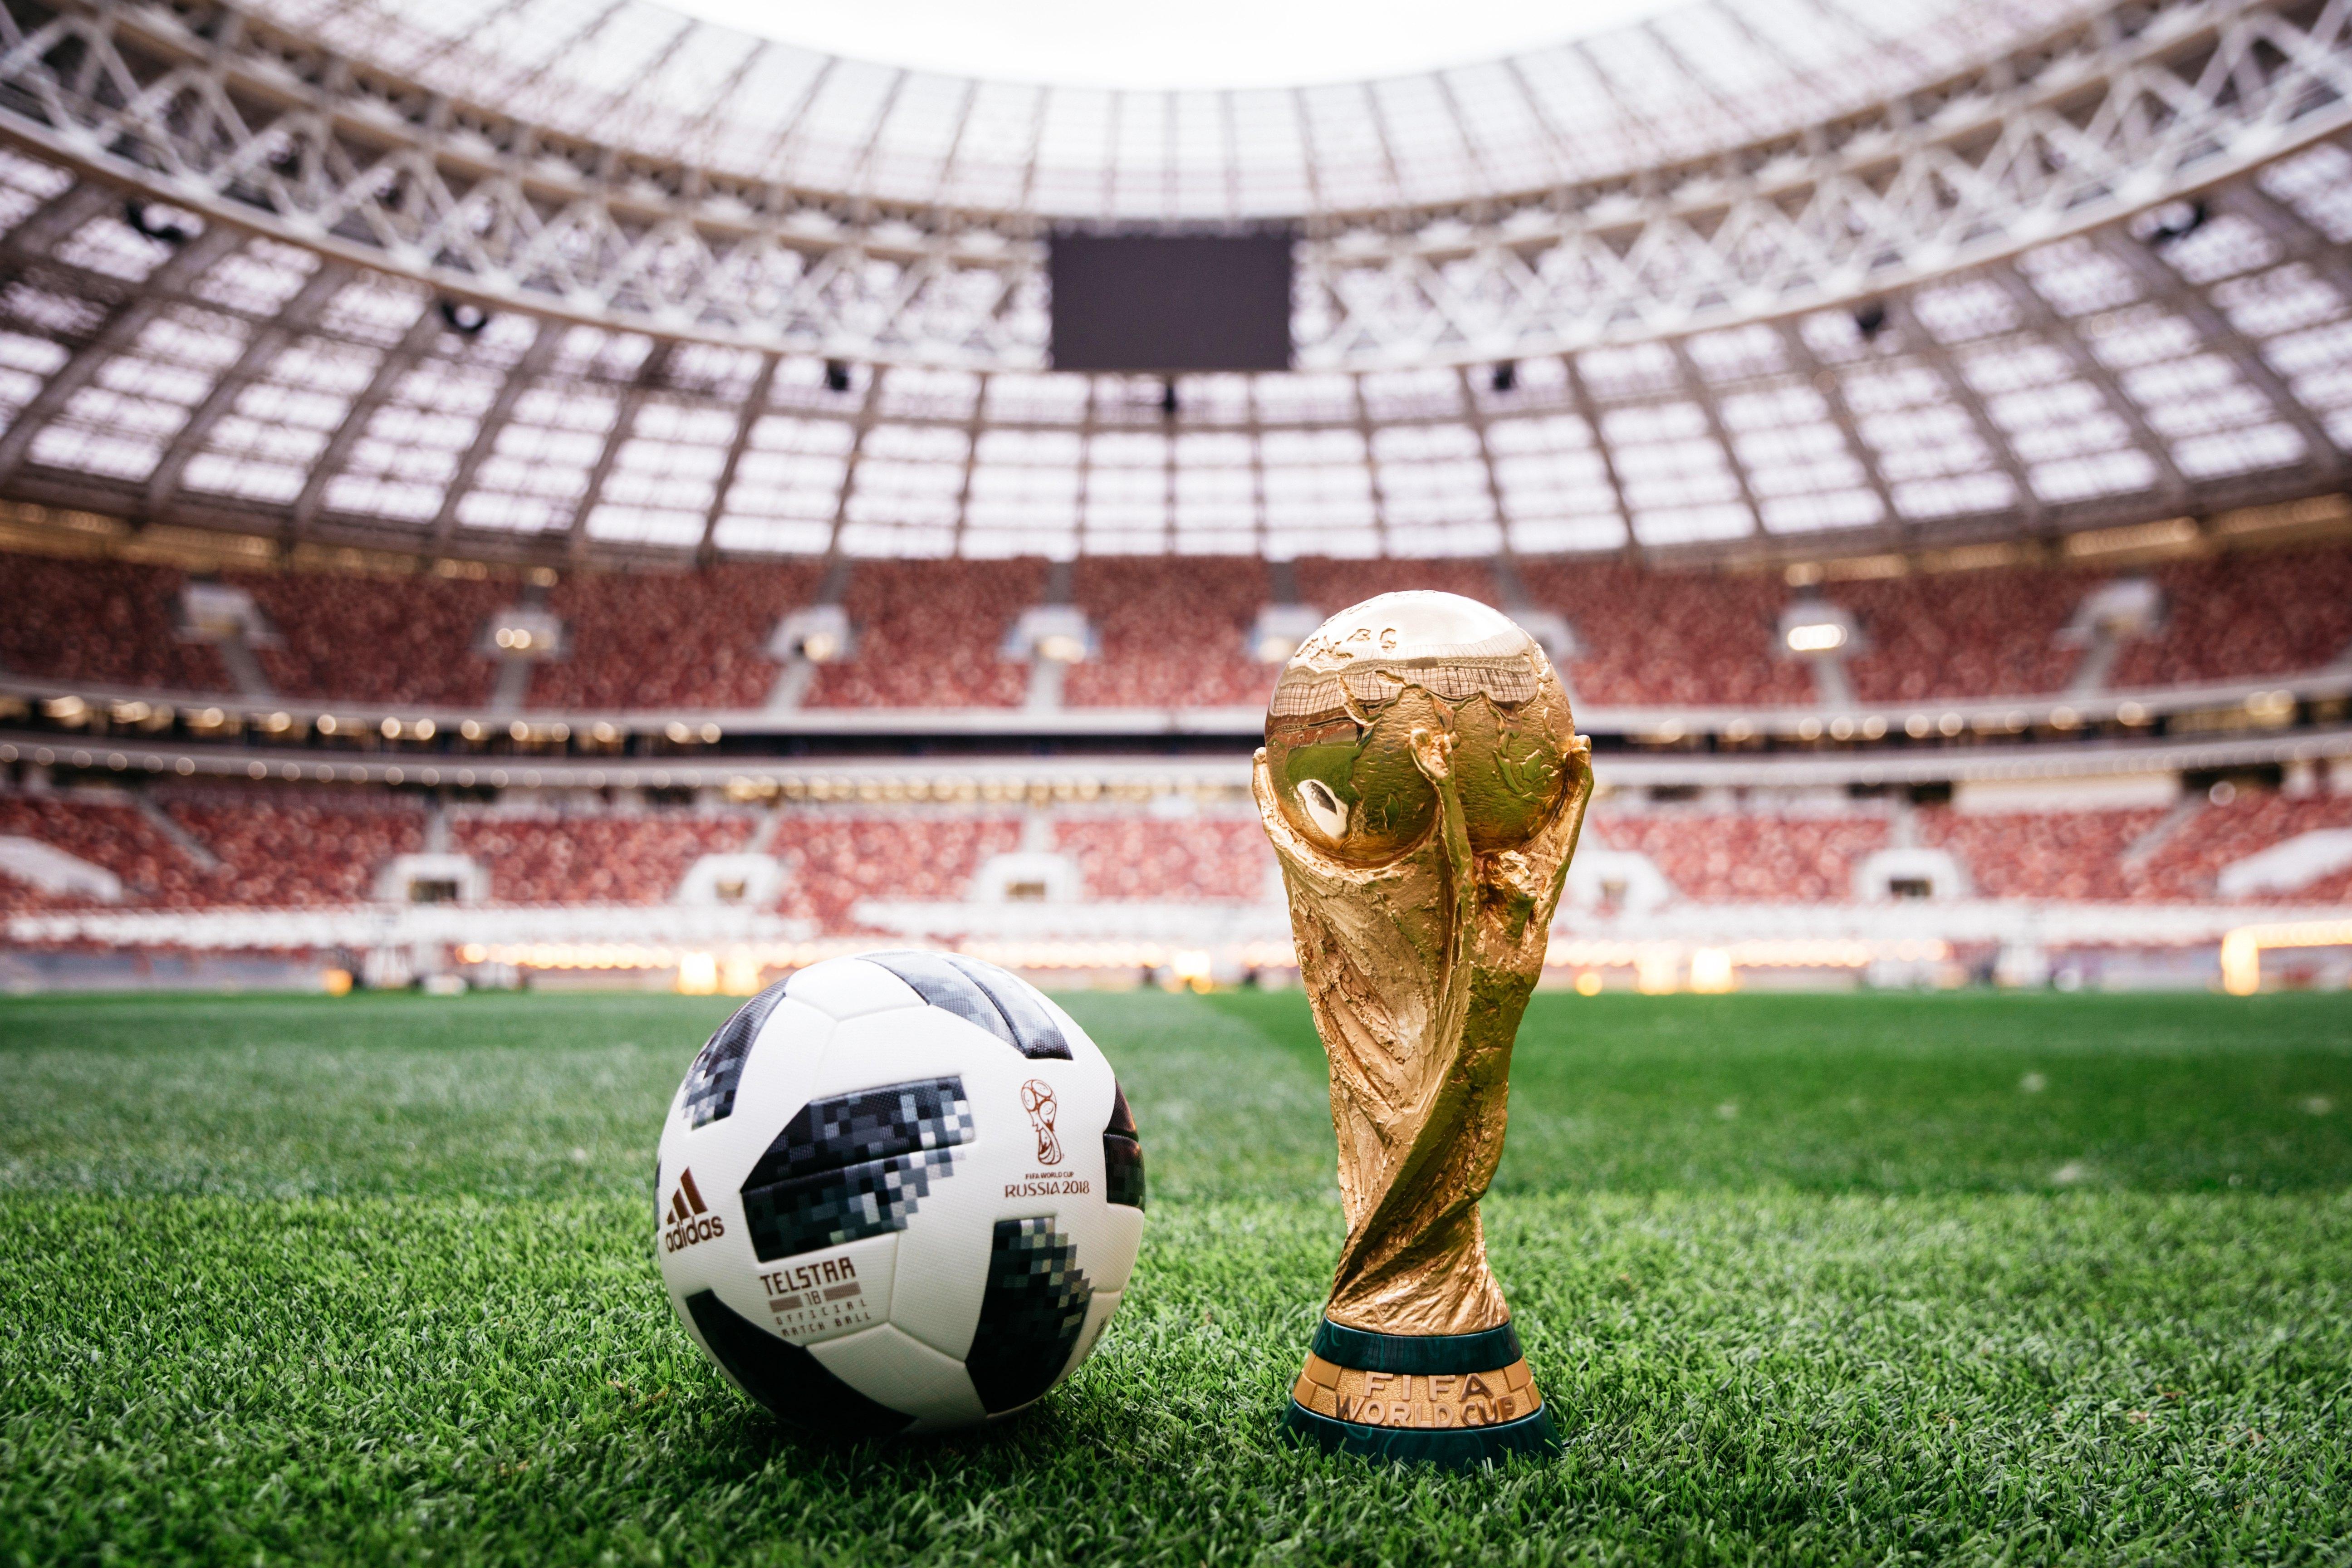 Хотя   Кубок мира   существует с 1930 года, и только в финале в Мексике в 1970 году был выпущен первый официальный мяч